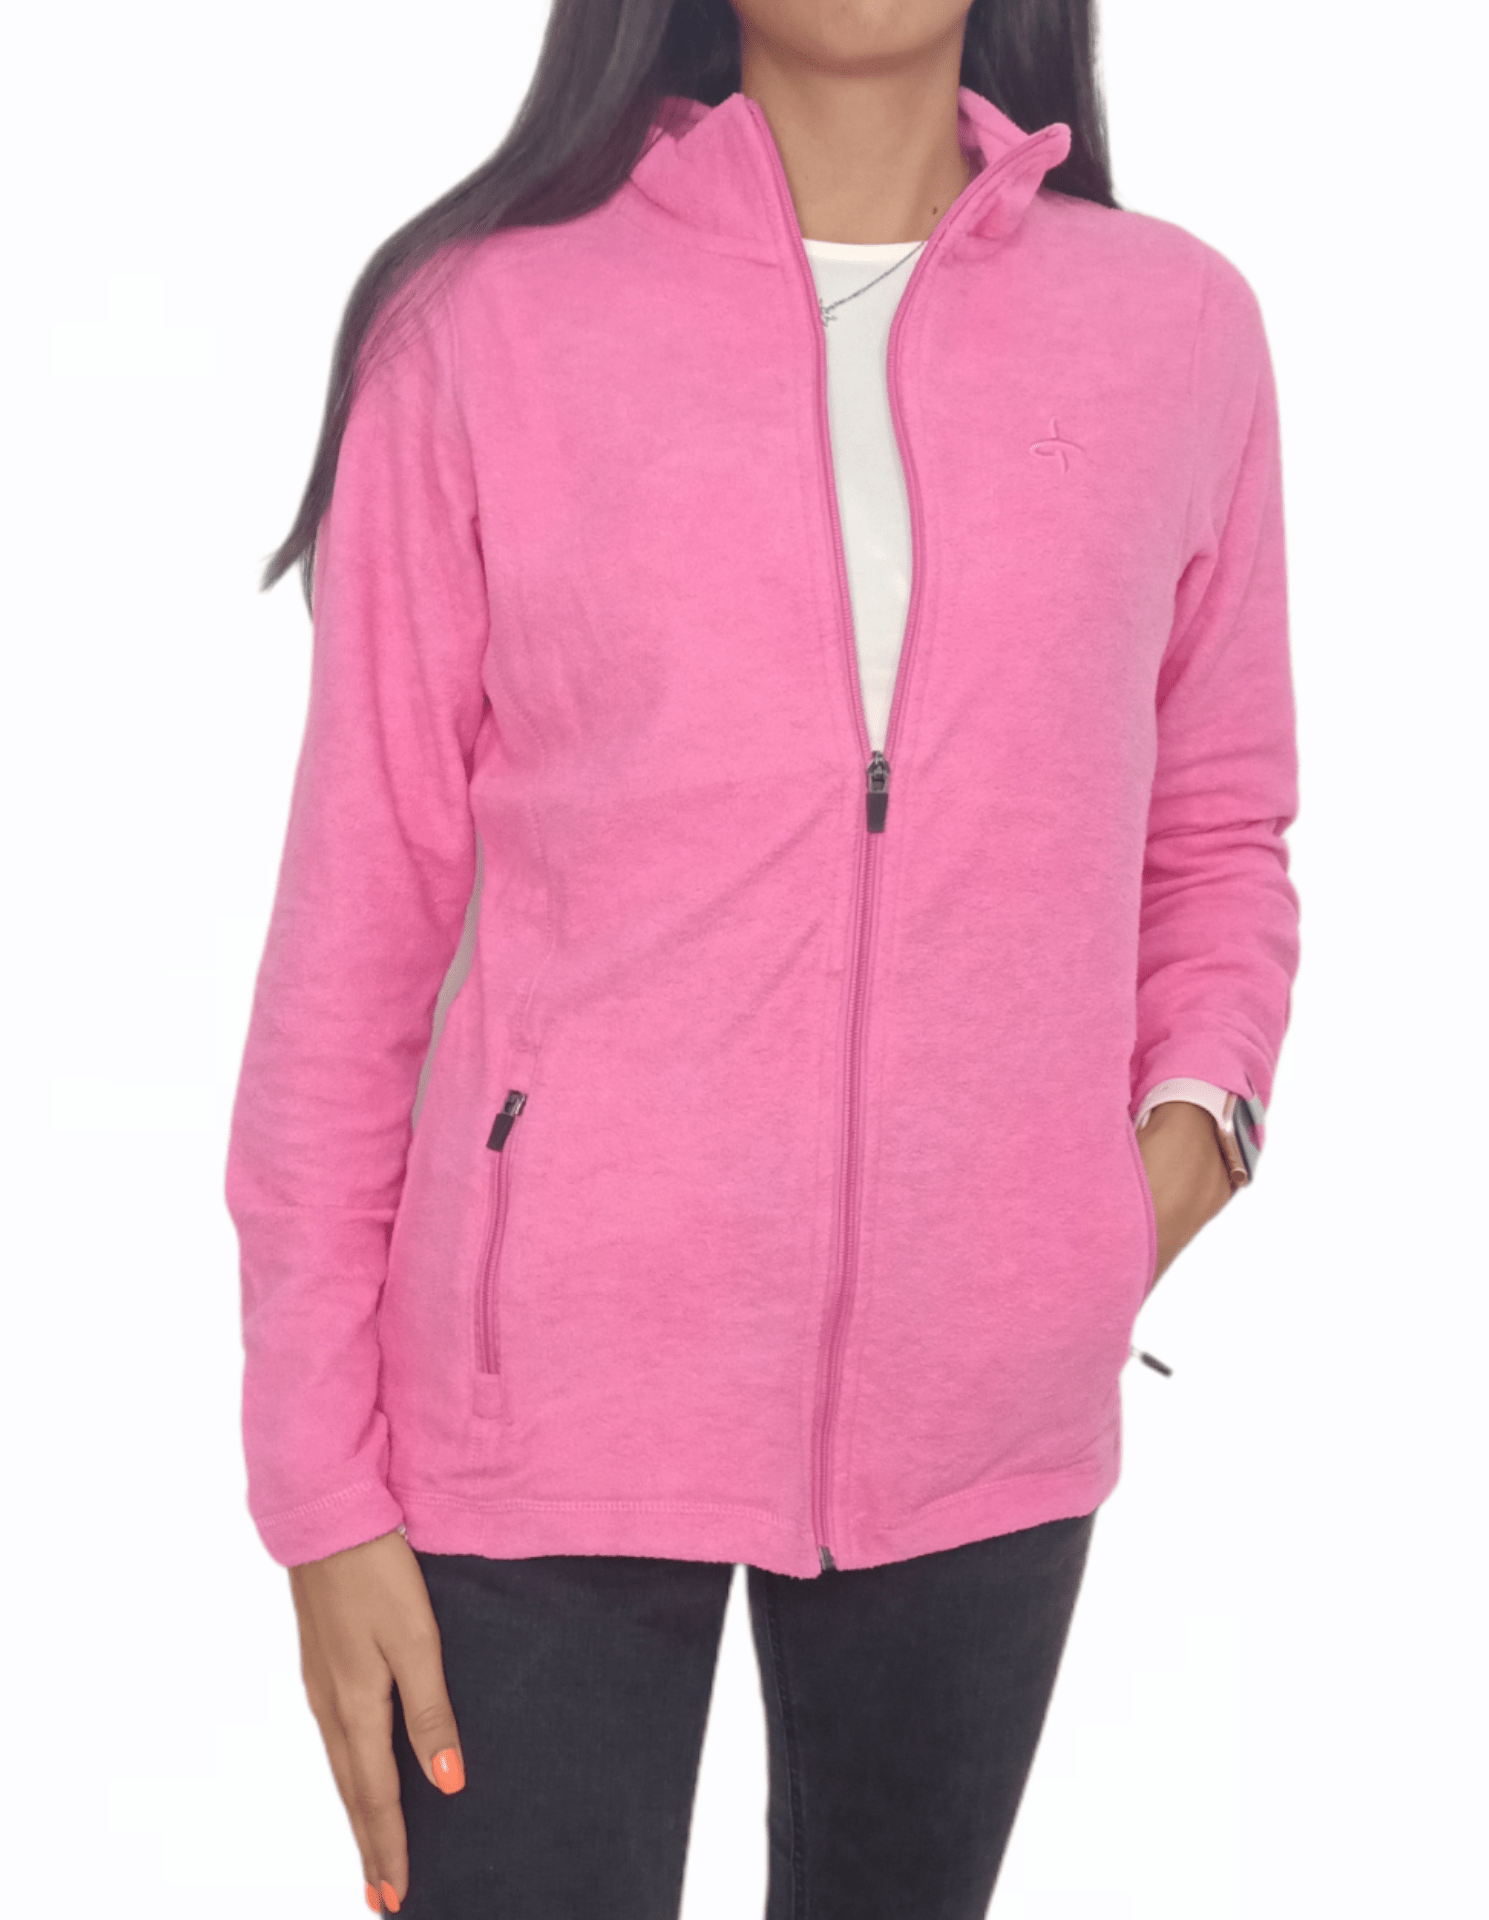 ElOutlet Women Sportsn Hoodie Jacket Pink Sports Hoodie Jacket